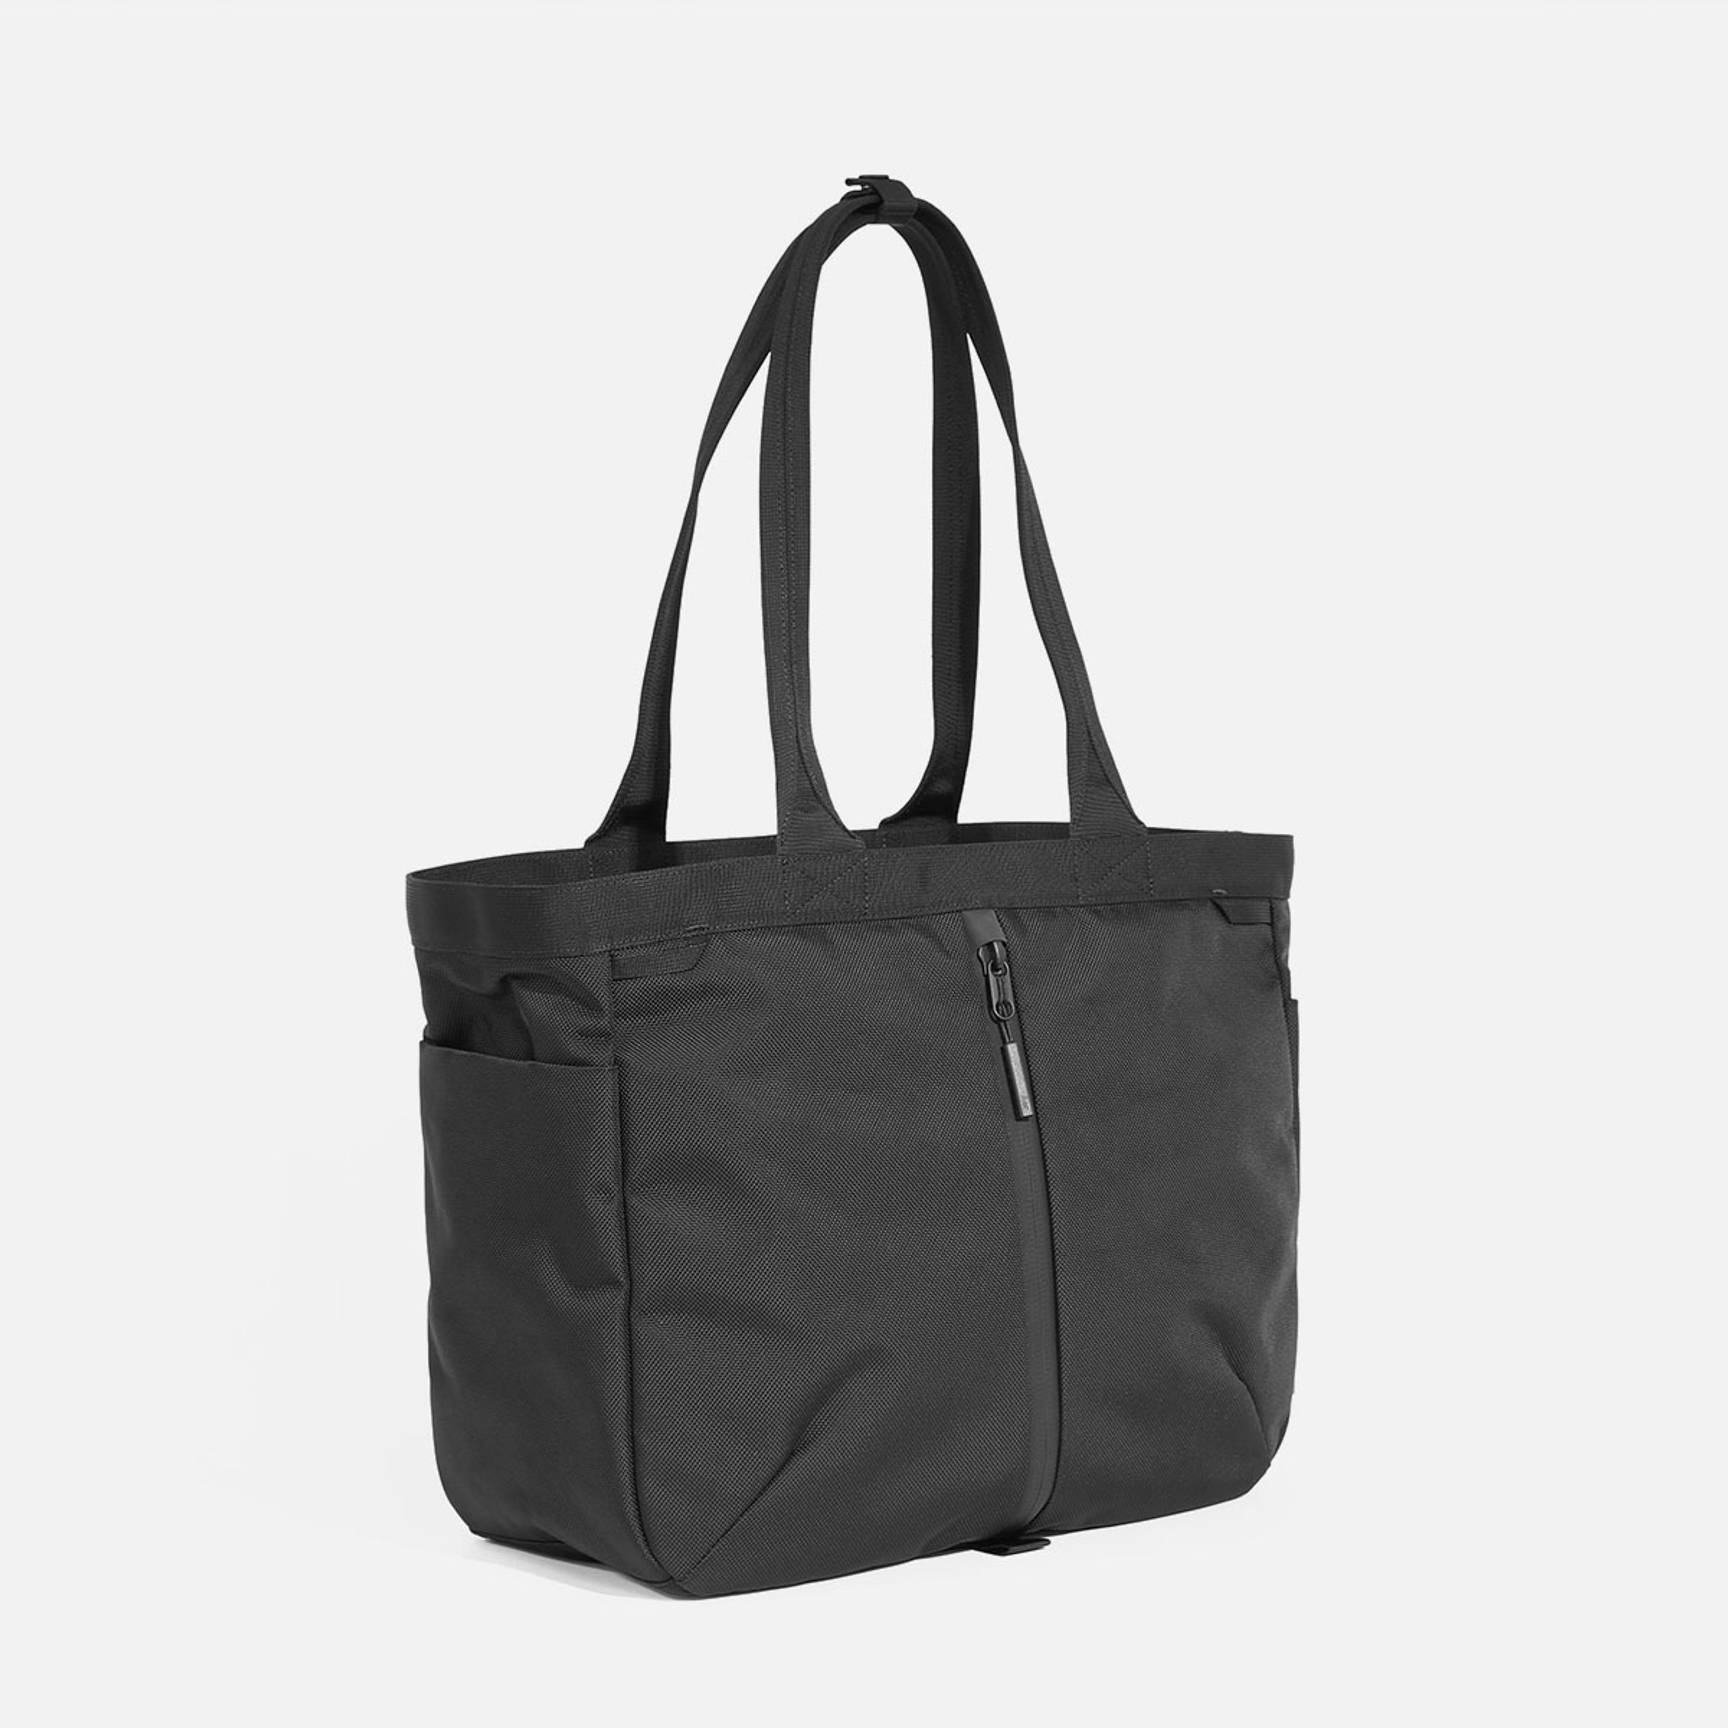 Women's Black Tote & Shopper Bags